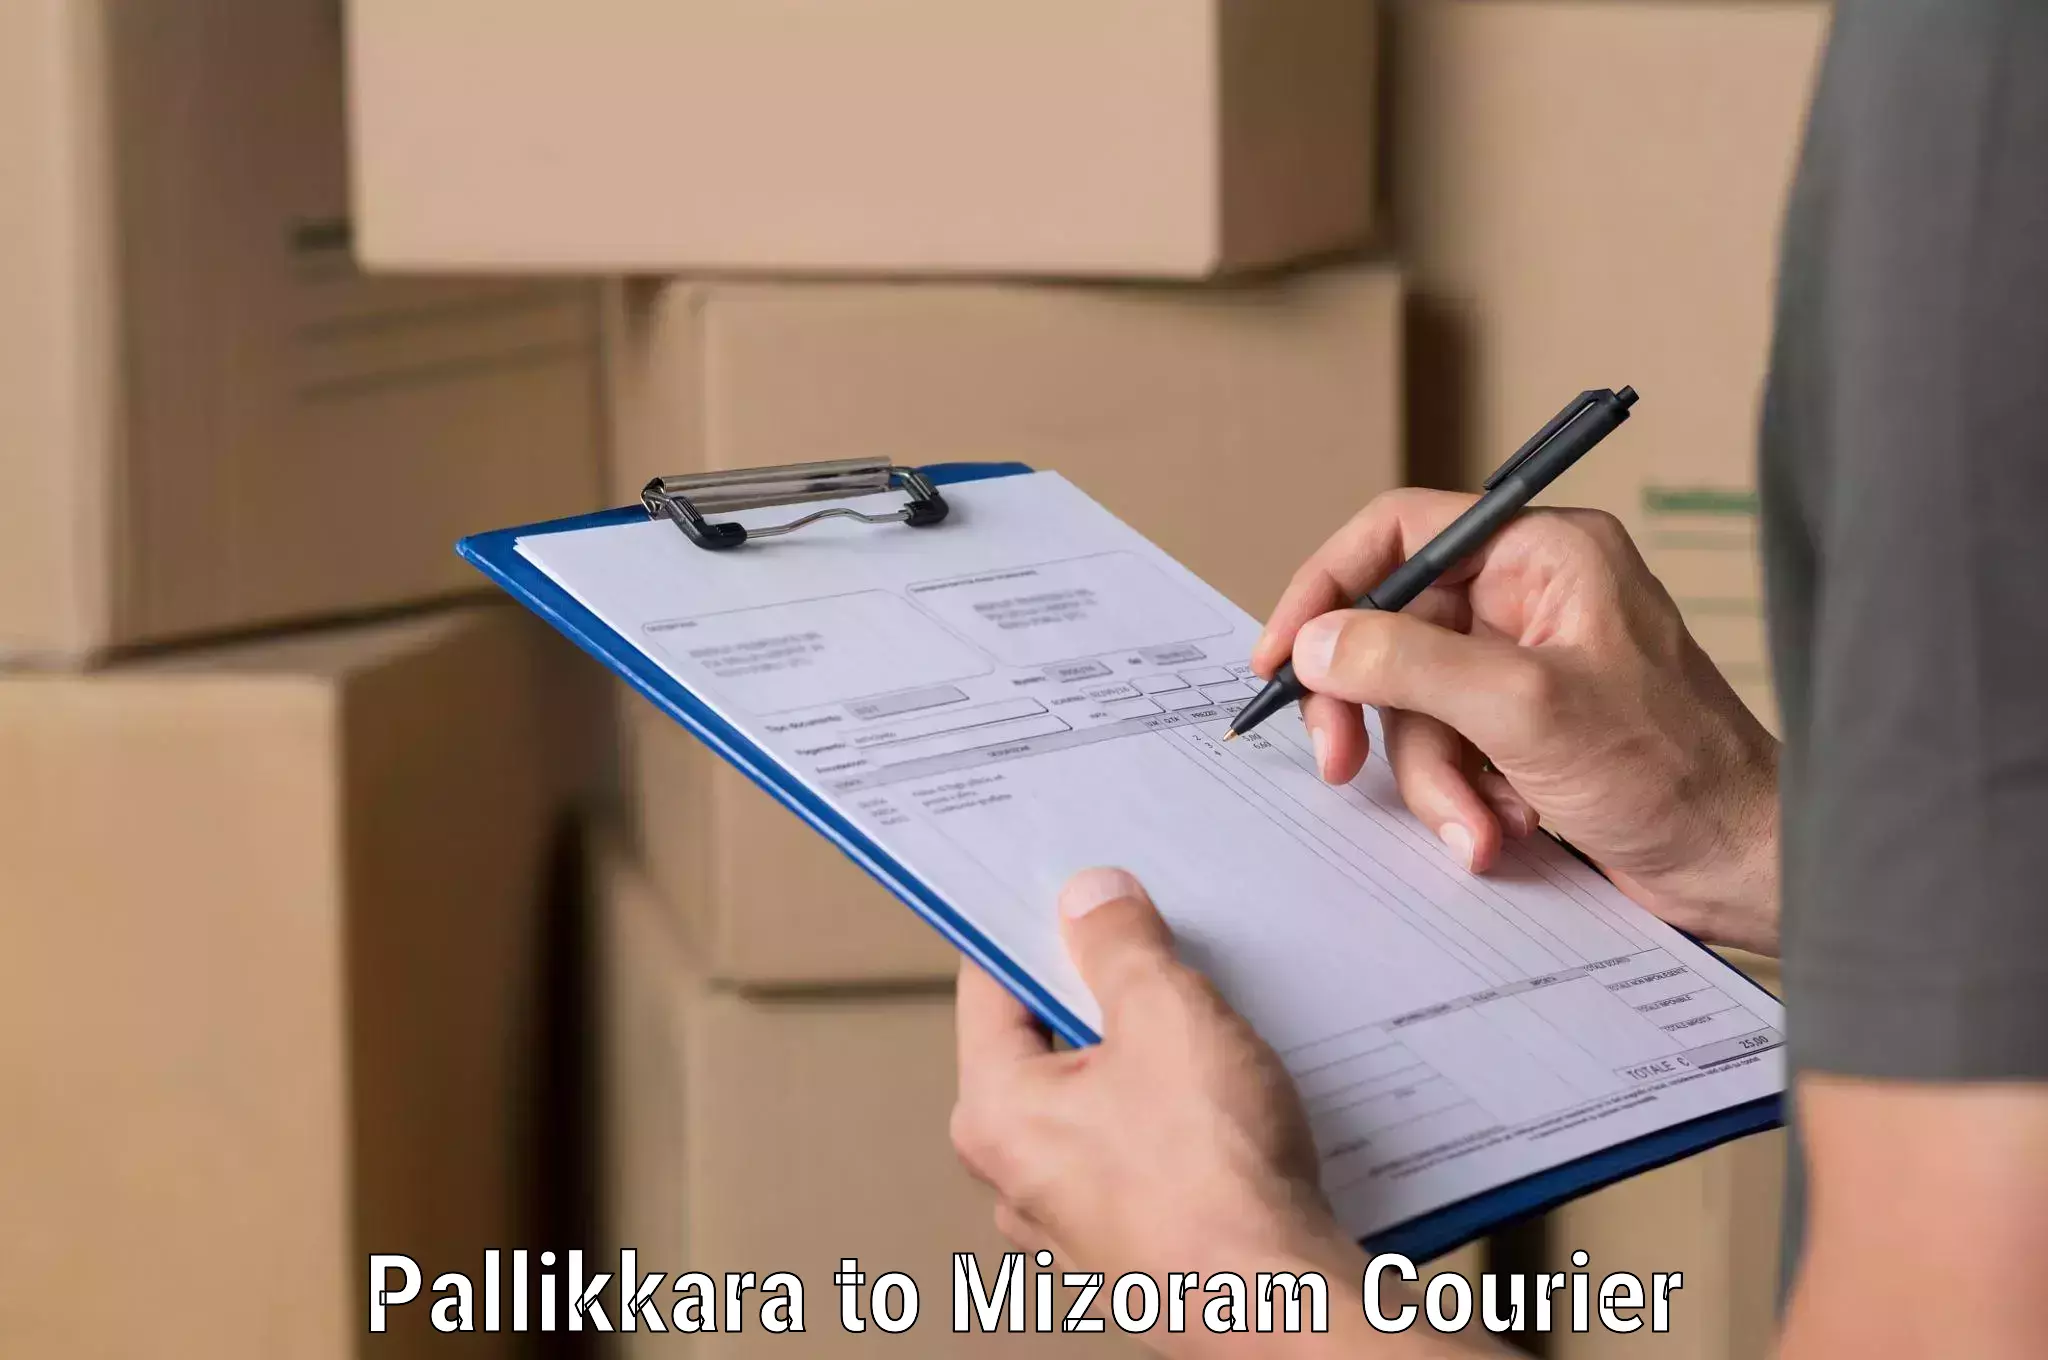 Shipping and handling Pallikkara to Mizoram University Aizawl